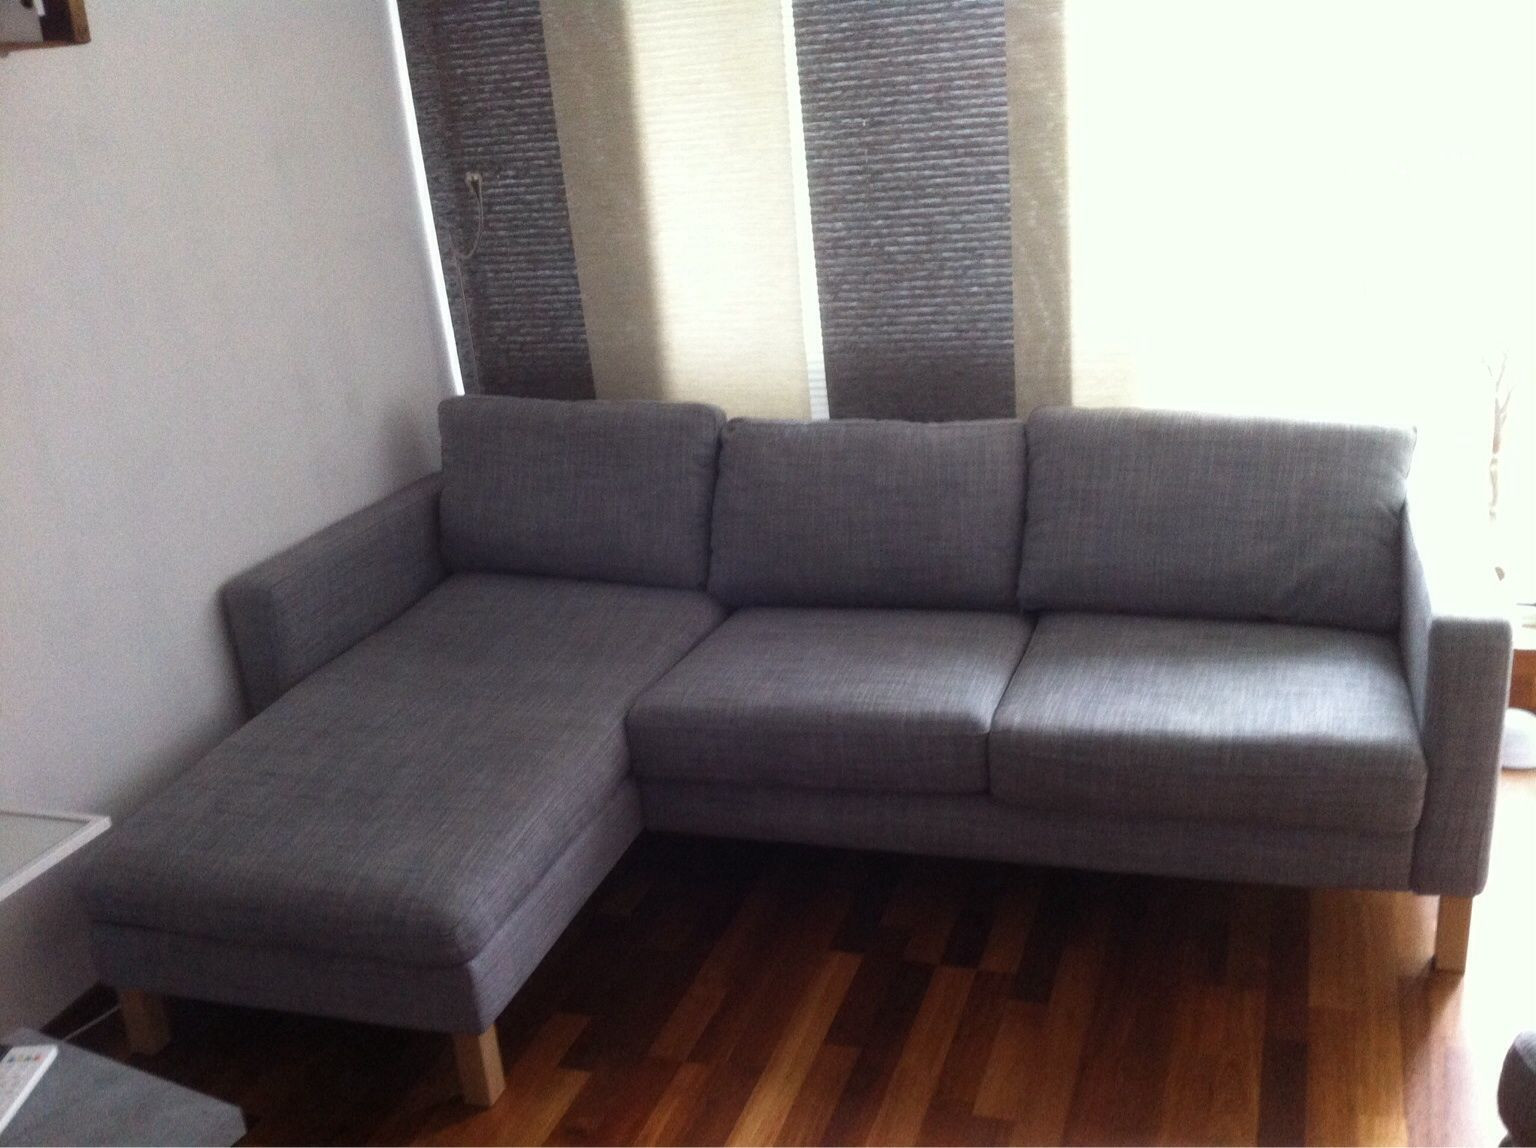 Sofa Mit Recamiere
 Sofas Mit Recamiere Cool Sitzer Sofa Mit Recamiere New